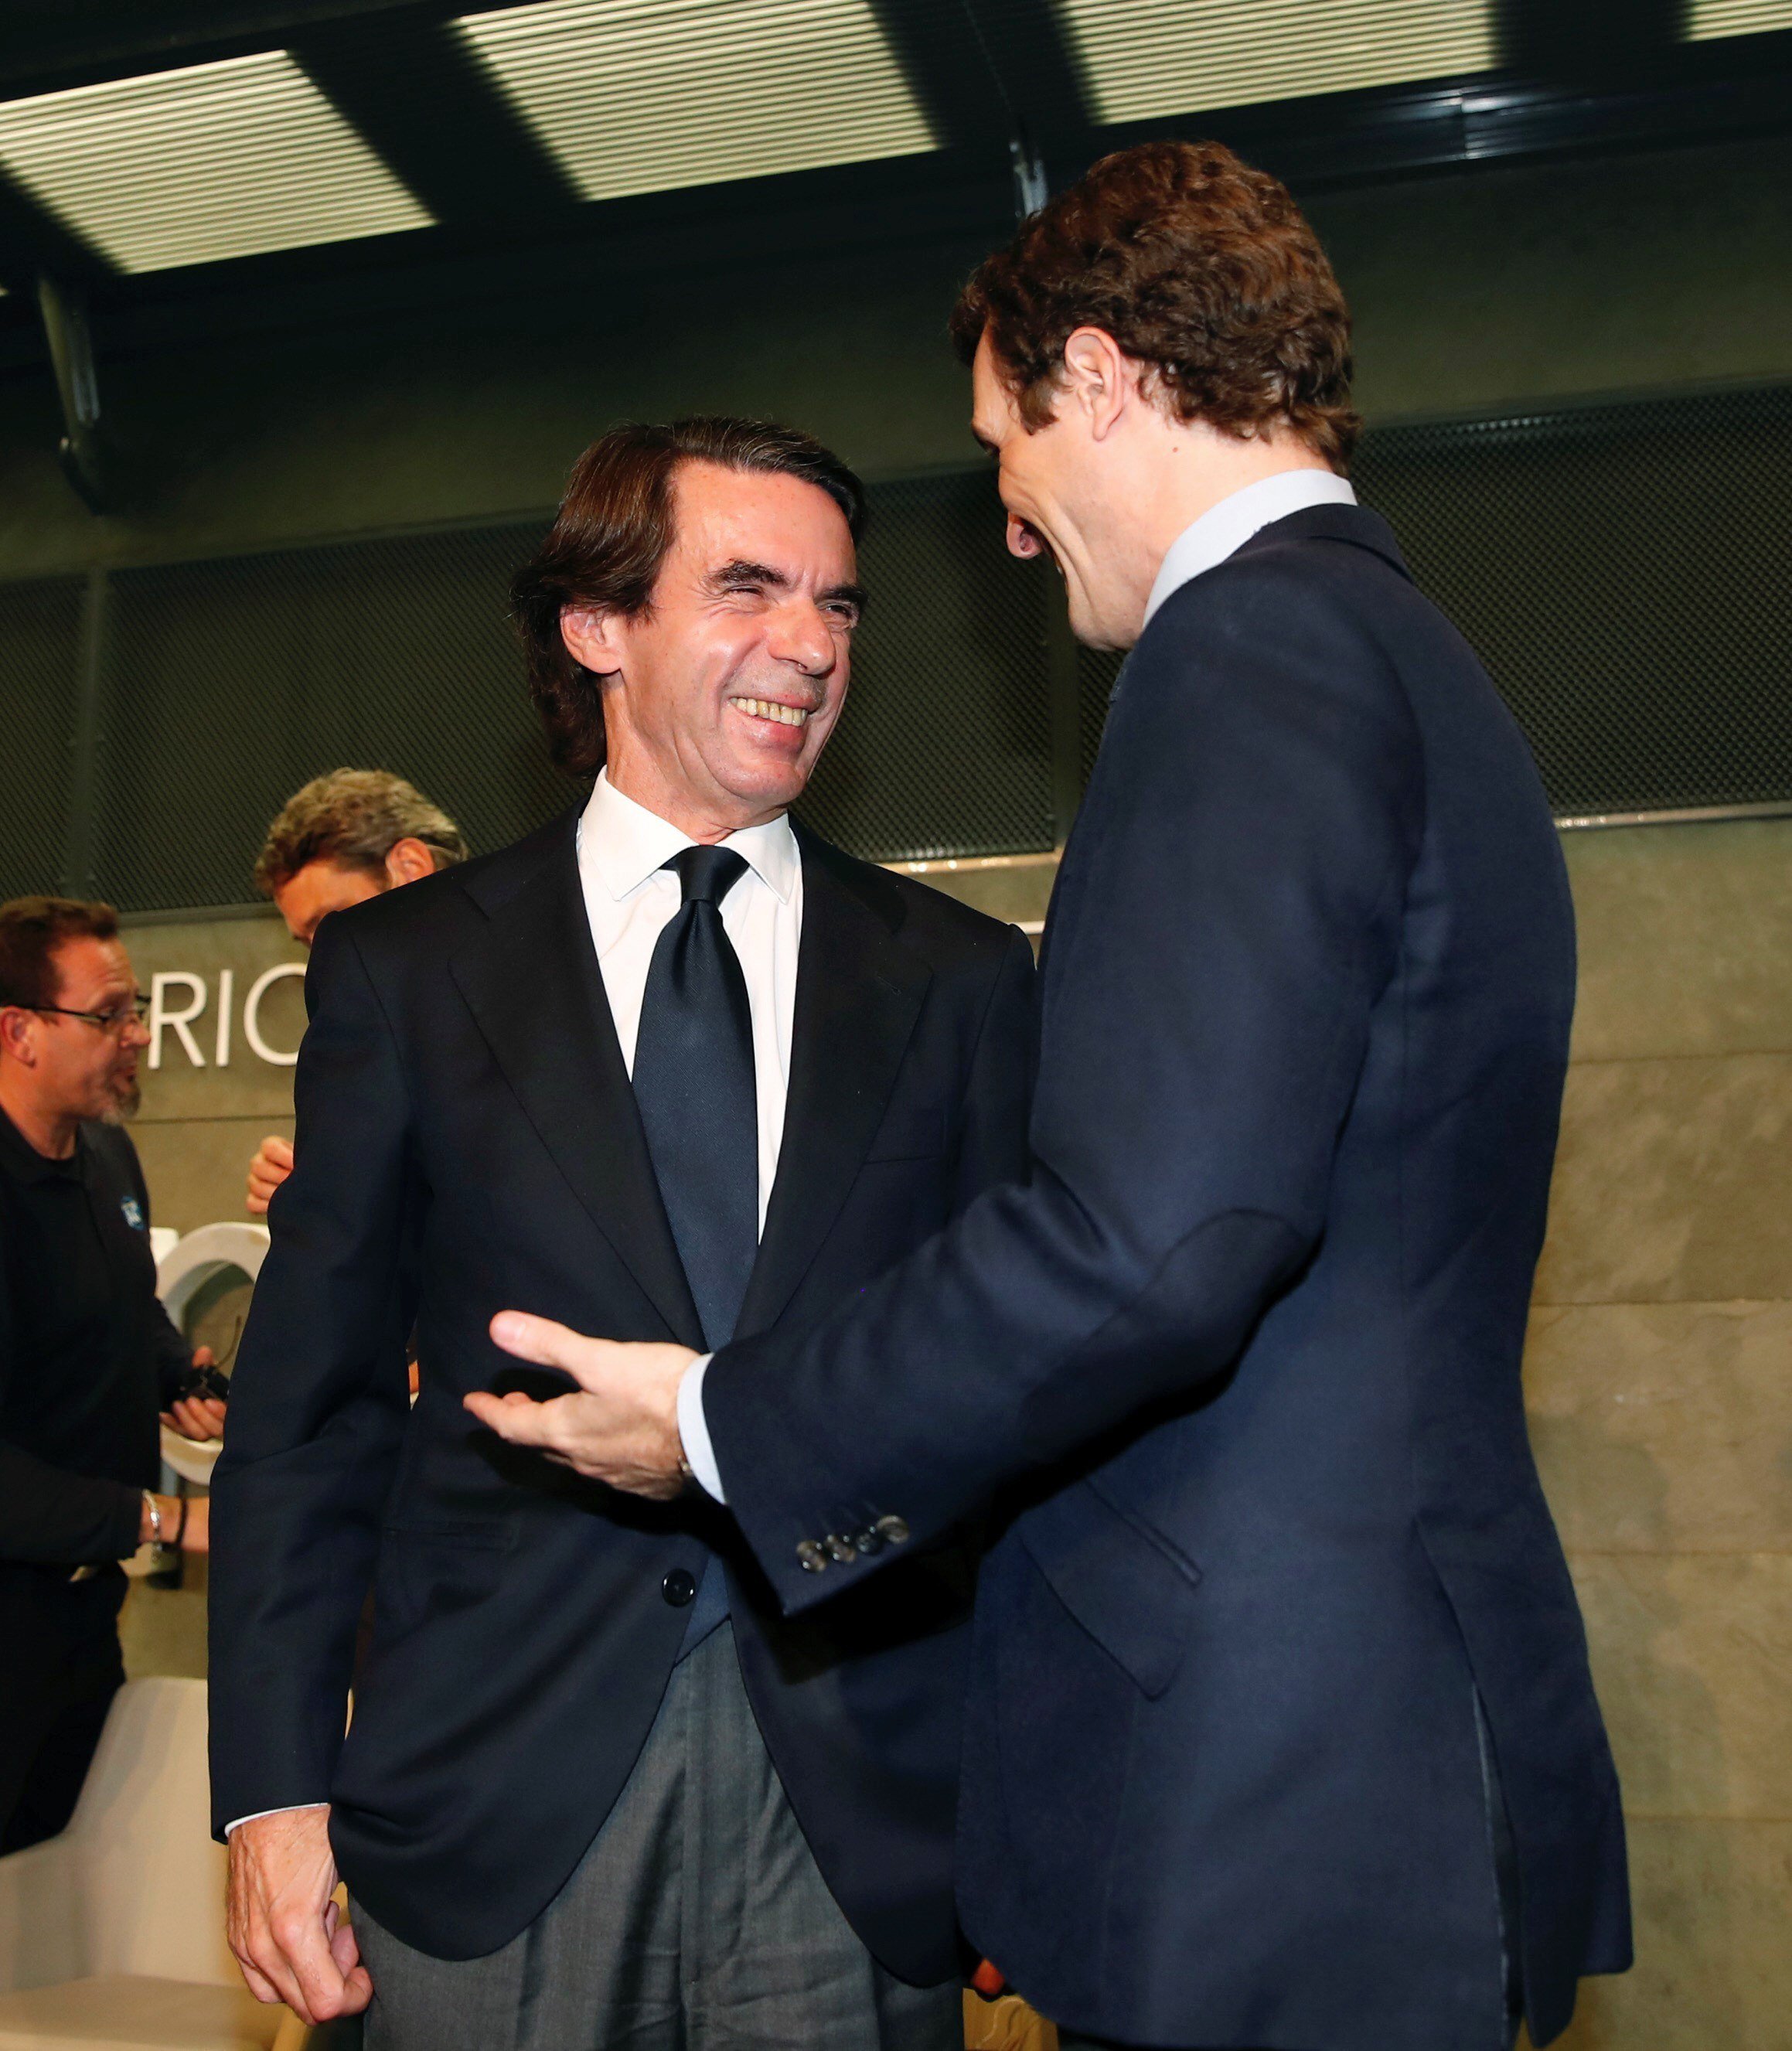 Aznar, de bracet amb Casado: "El govern d'Espanya està condicionat per colpistes"